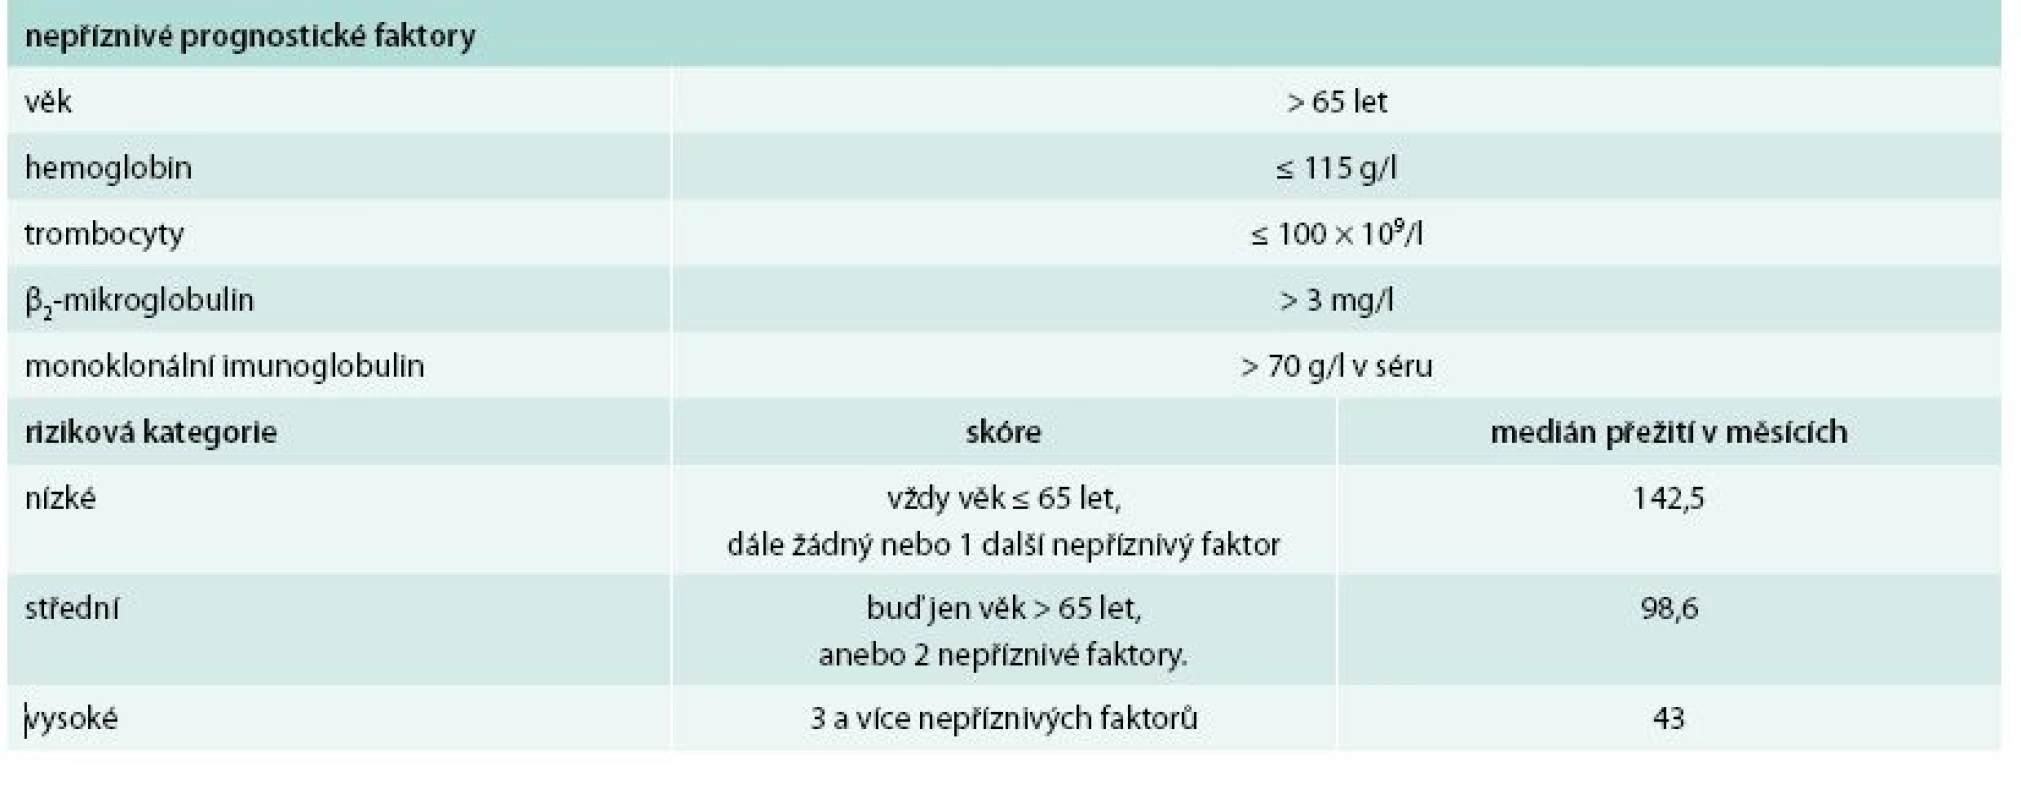 Mezinárodní prognostický index pro nemocné s Waldenströmovou makroglobulinemií [11]